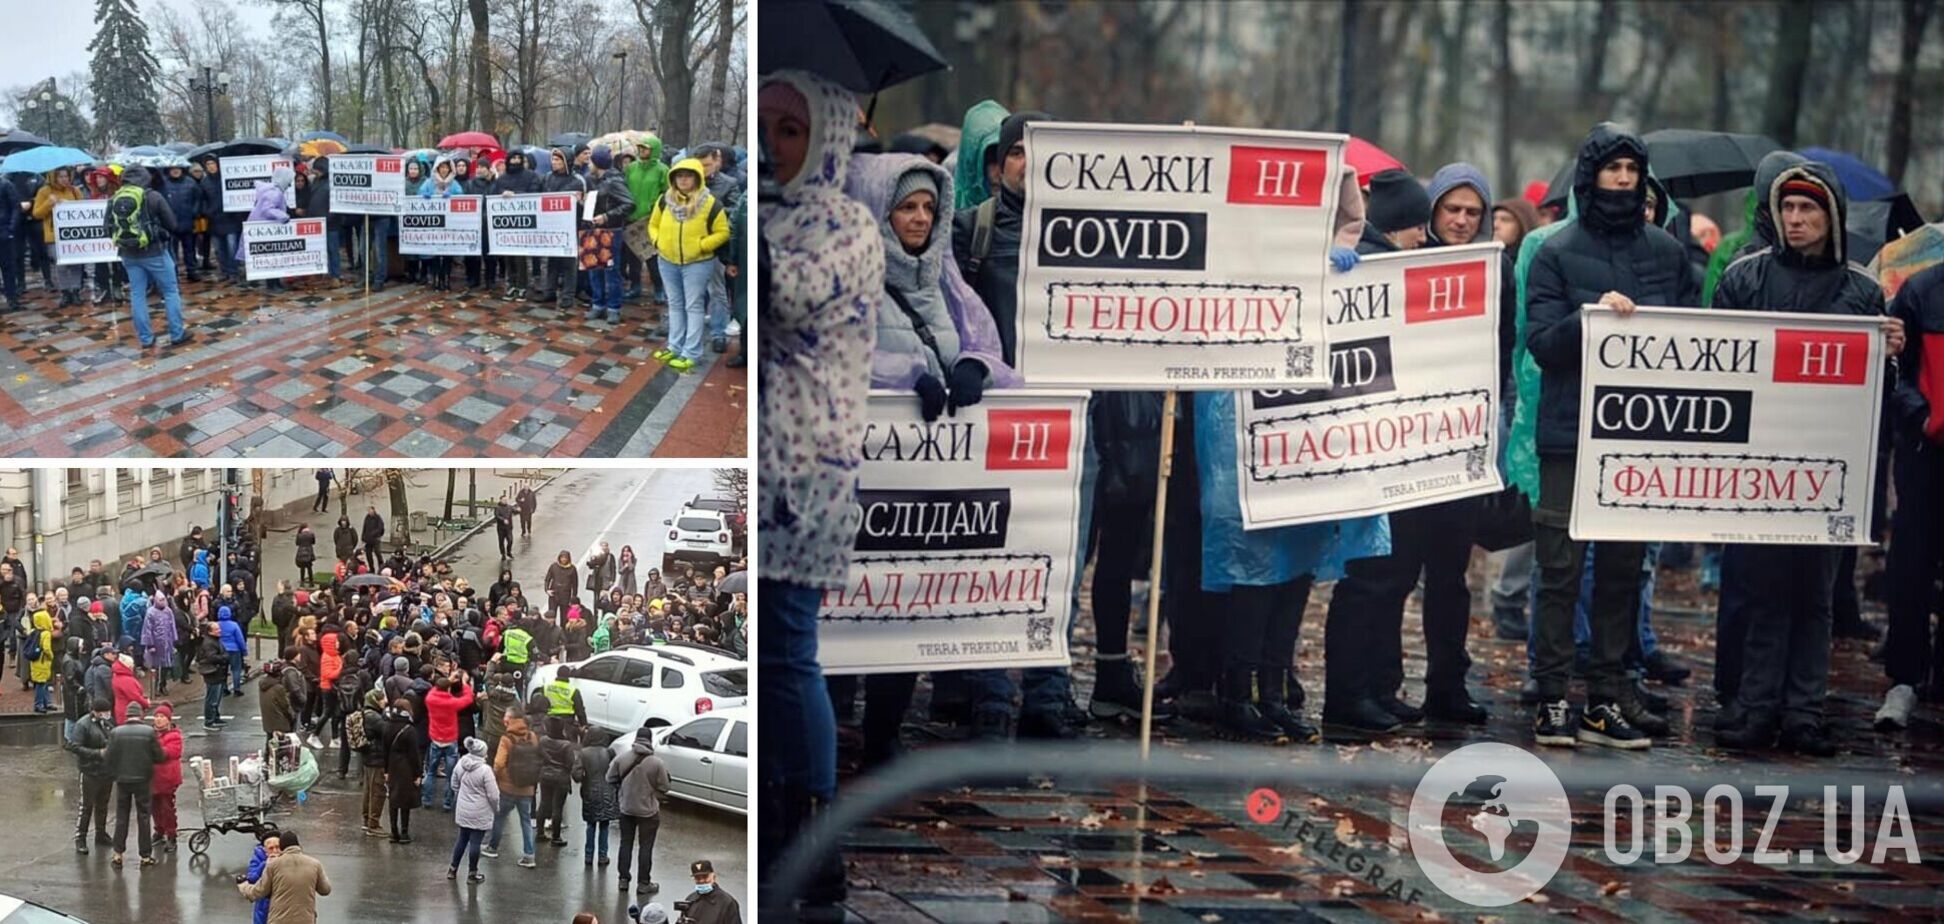 Антивакцинальный шабаш в Киеве: сколько это стоило и кто за этим стоит